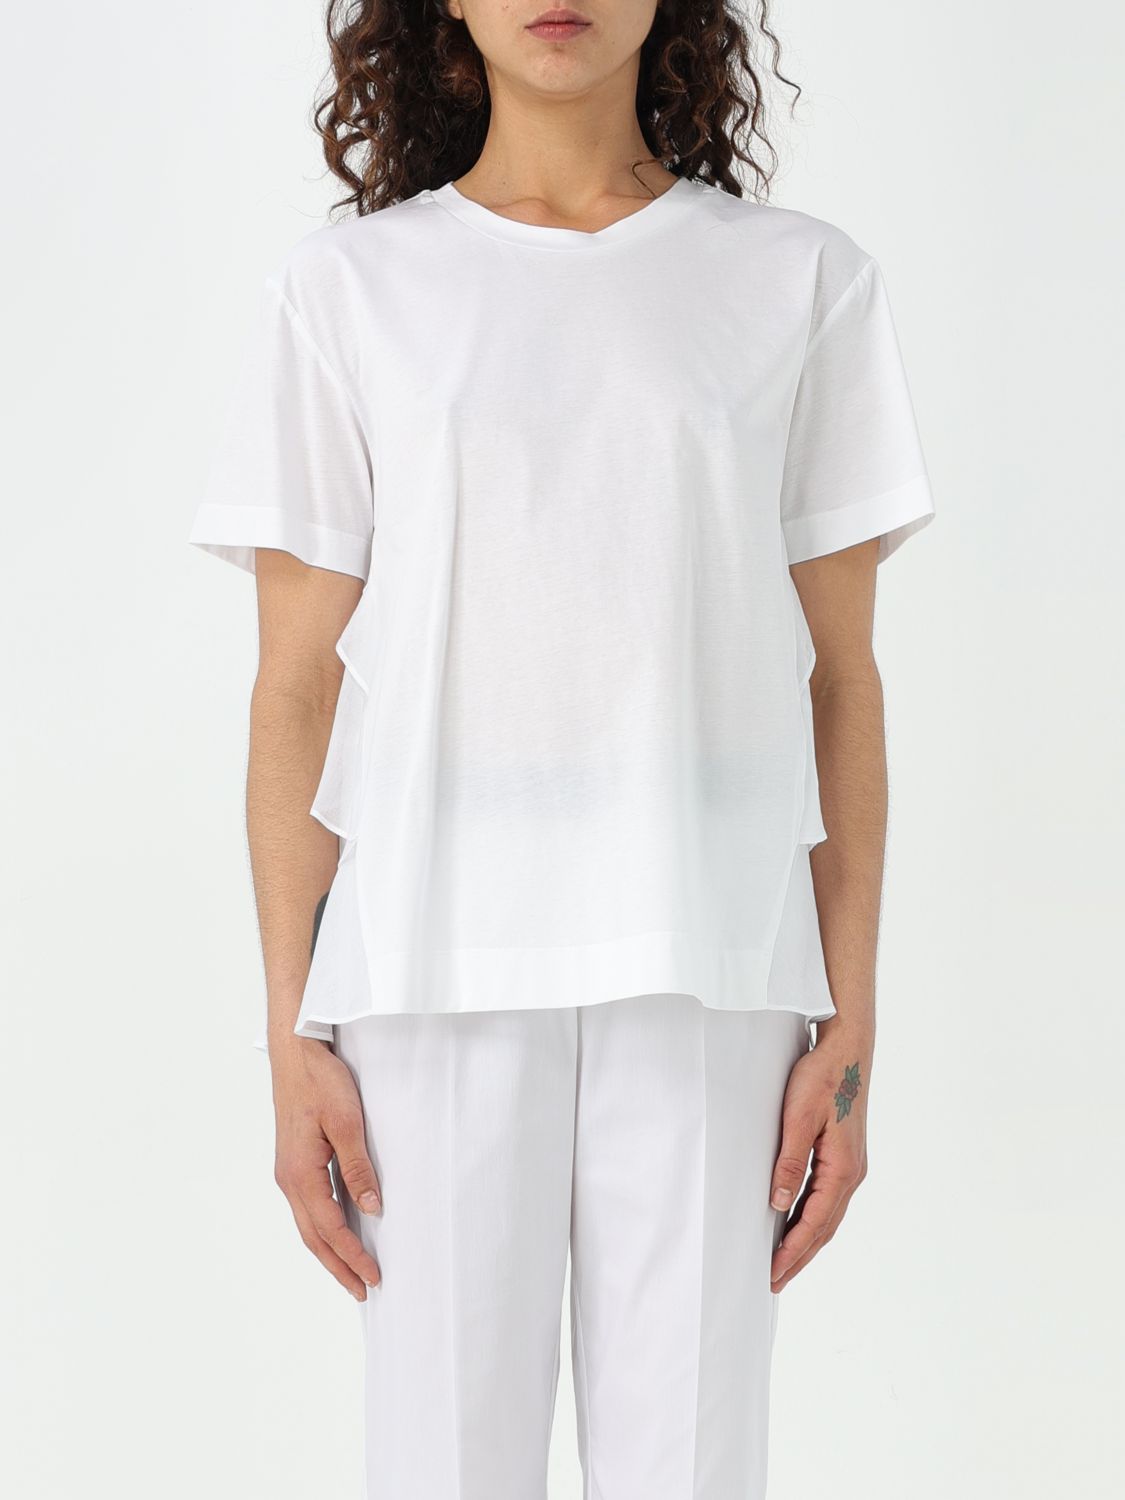 Meimeij T-Shirt MEIMEIJ Woman color White